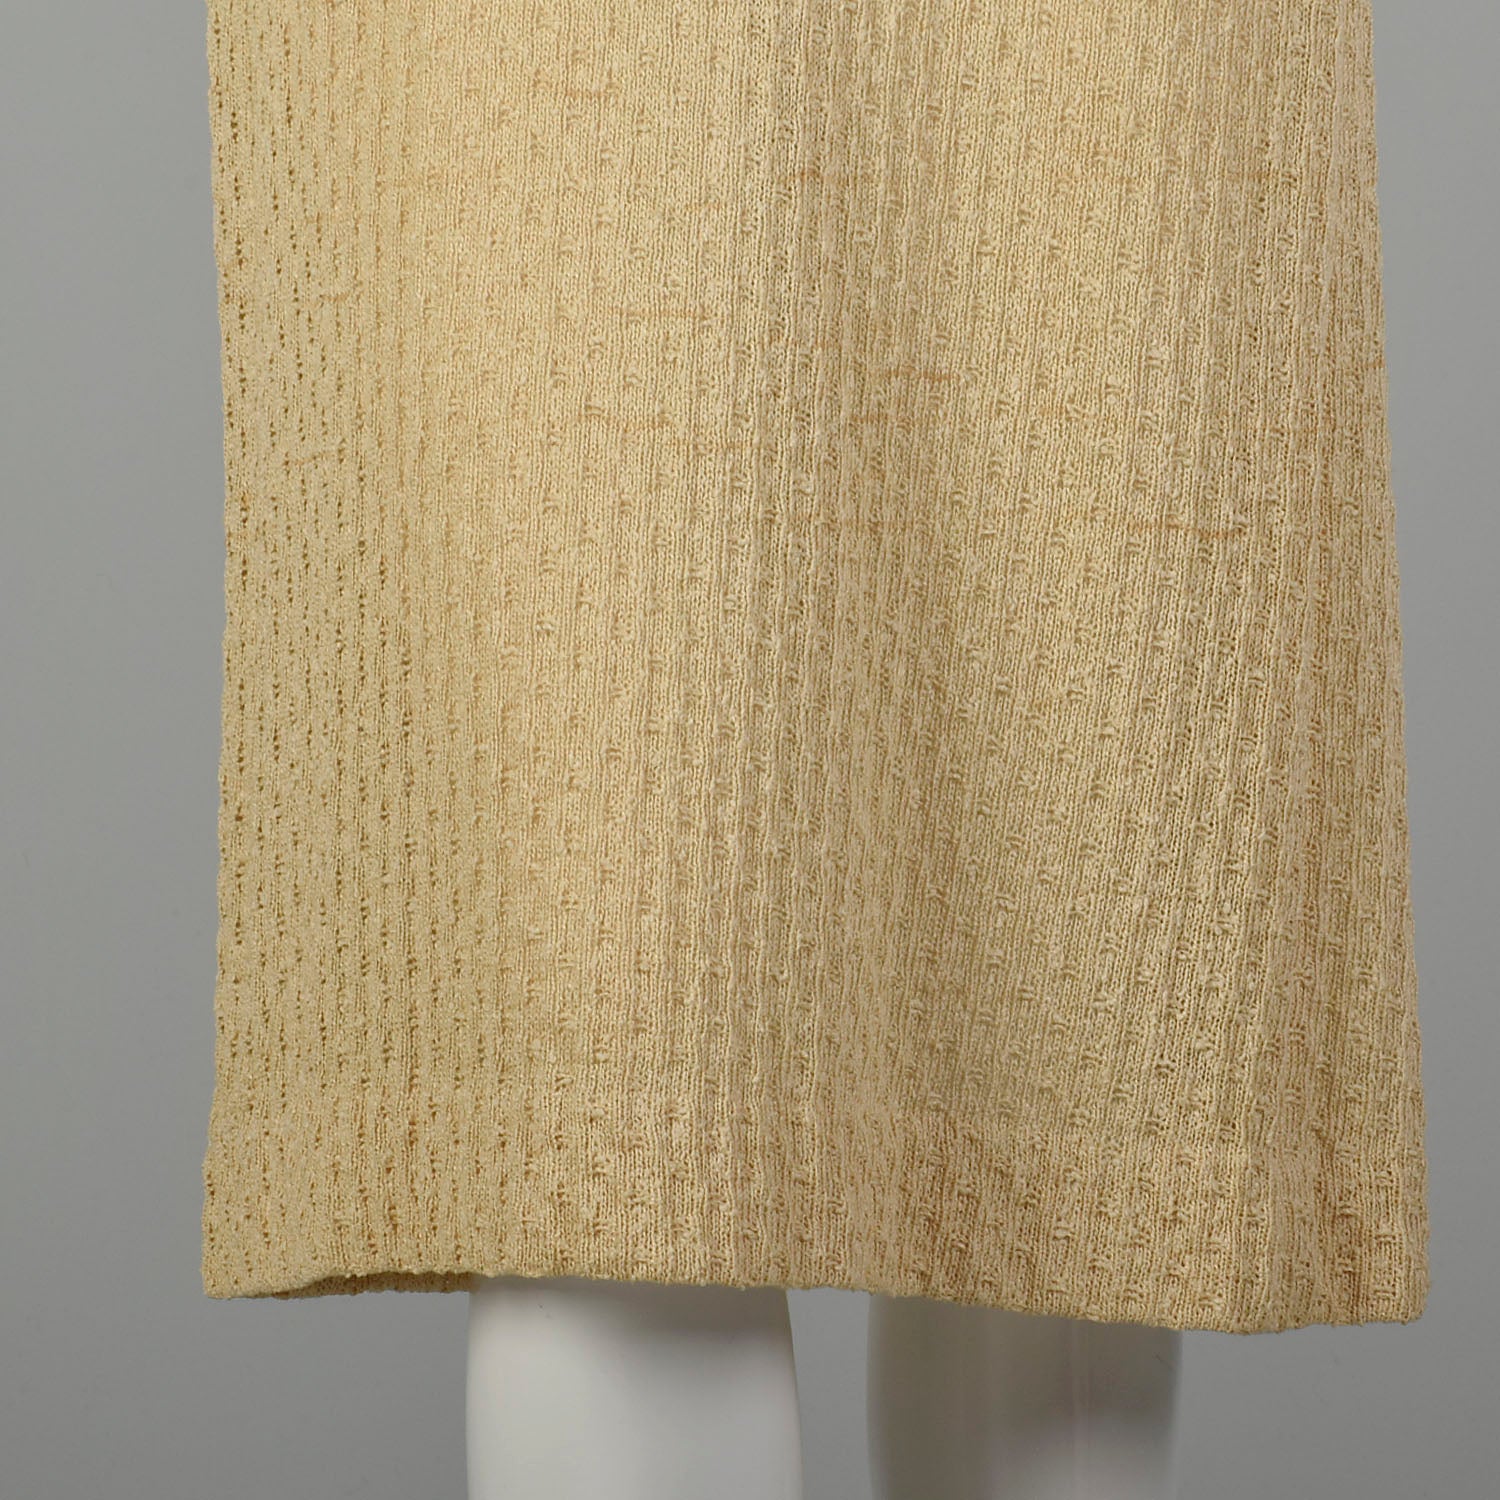 1970s Boho Tan Knit Dress Casual Summer Short Sleeve Modest